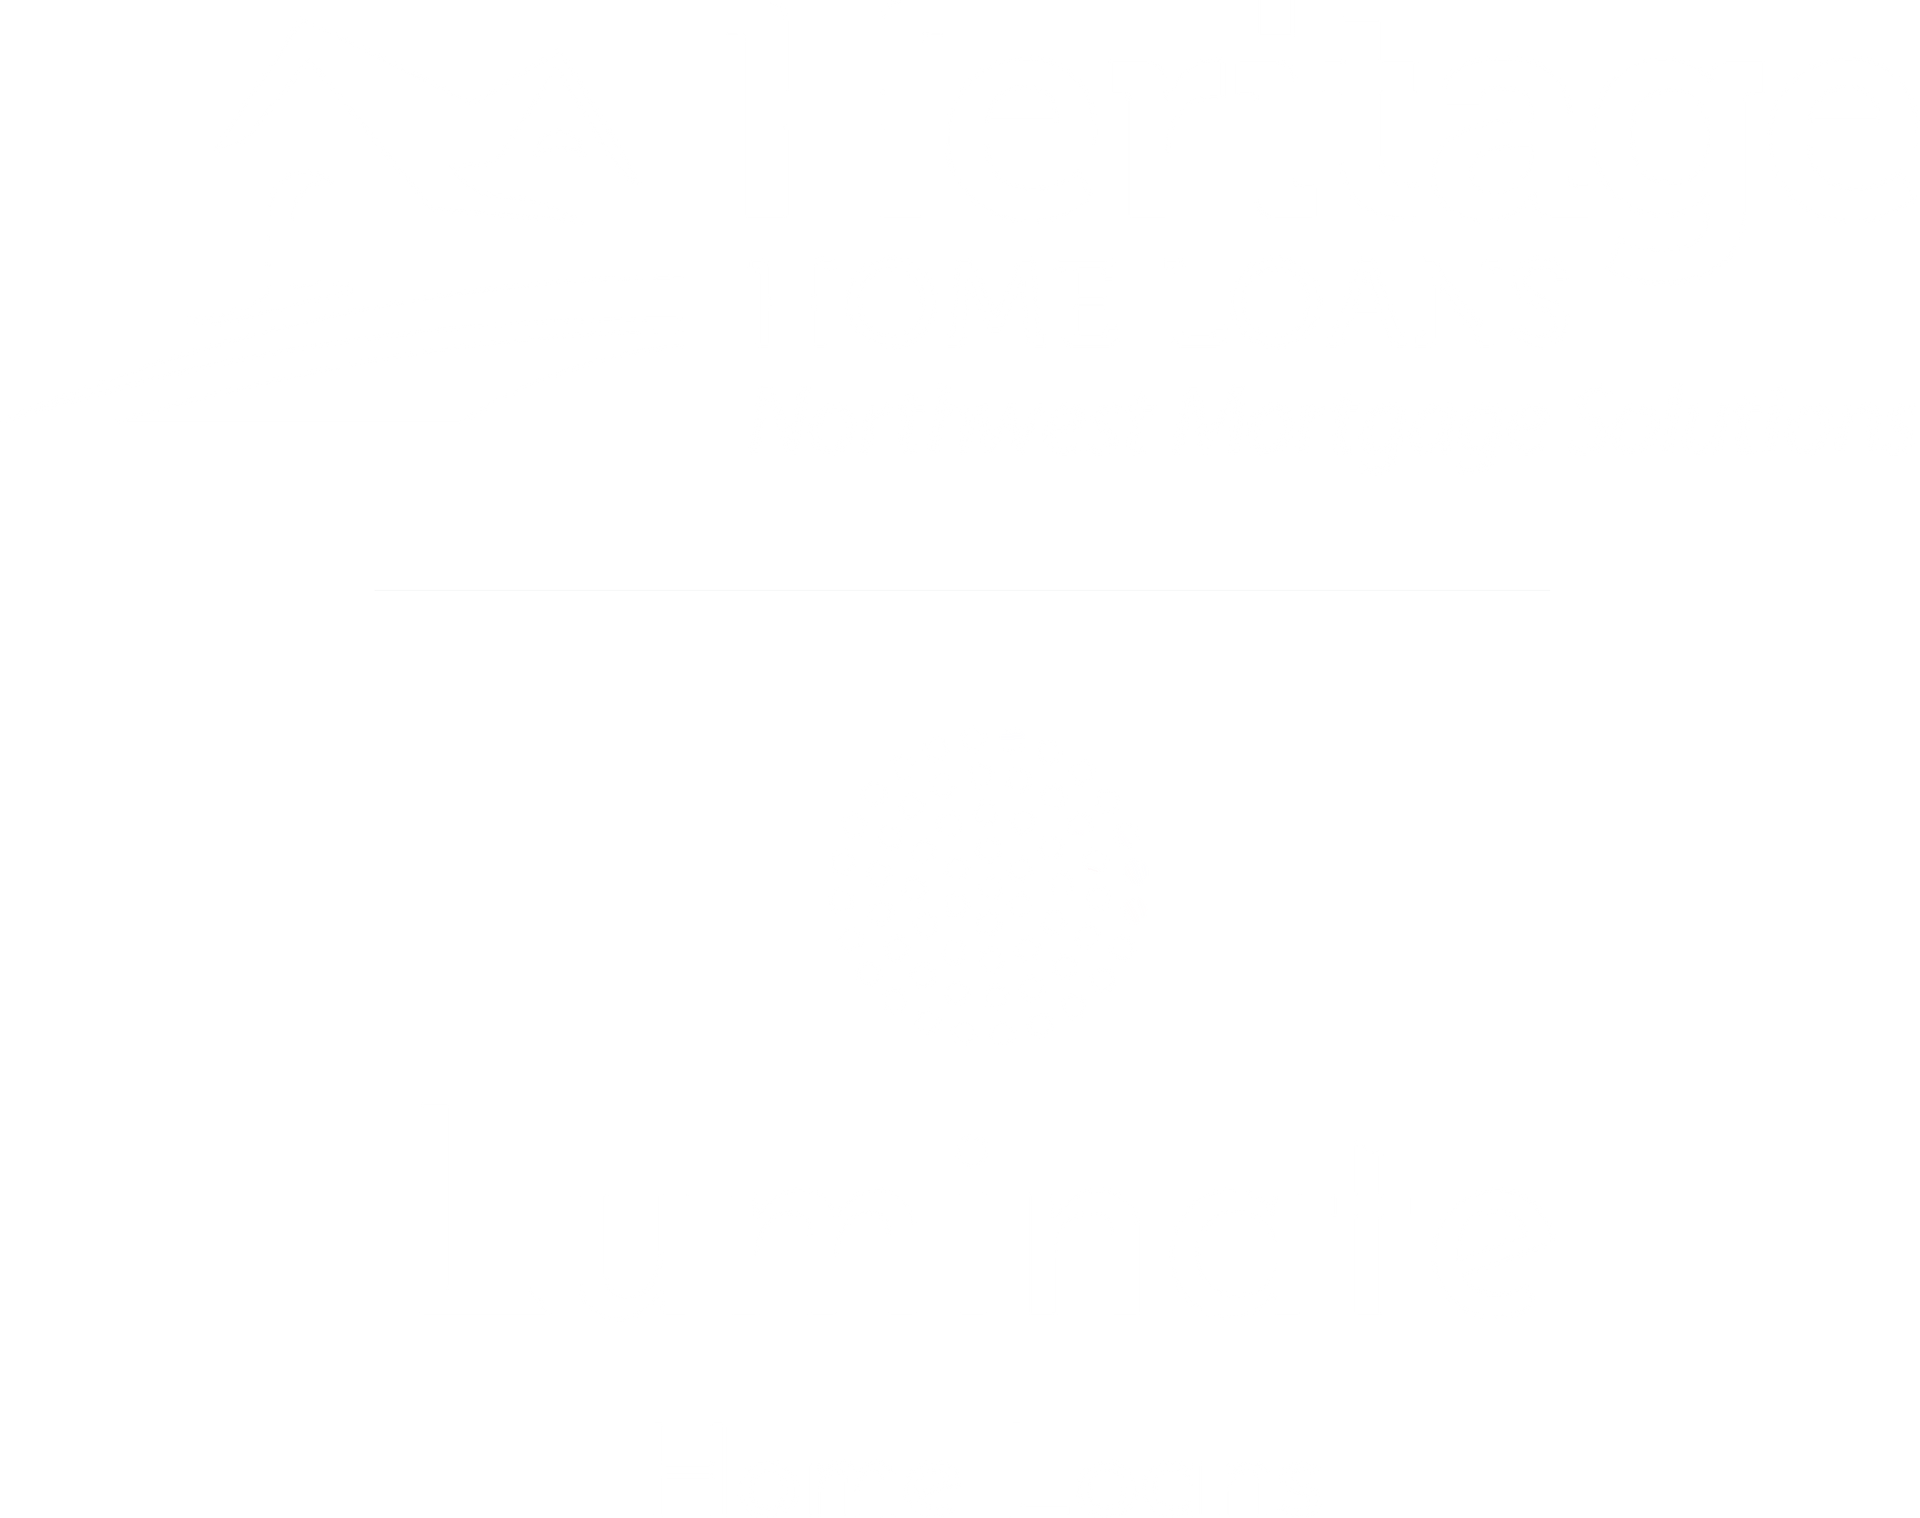 RCG and Luminate logo